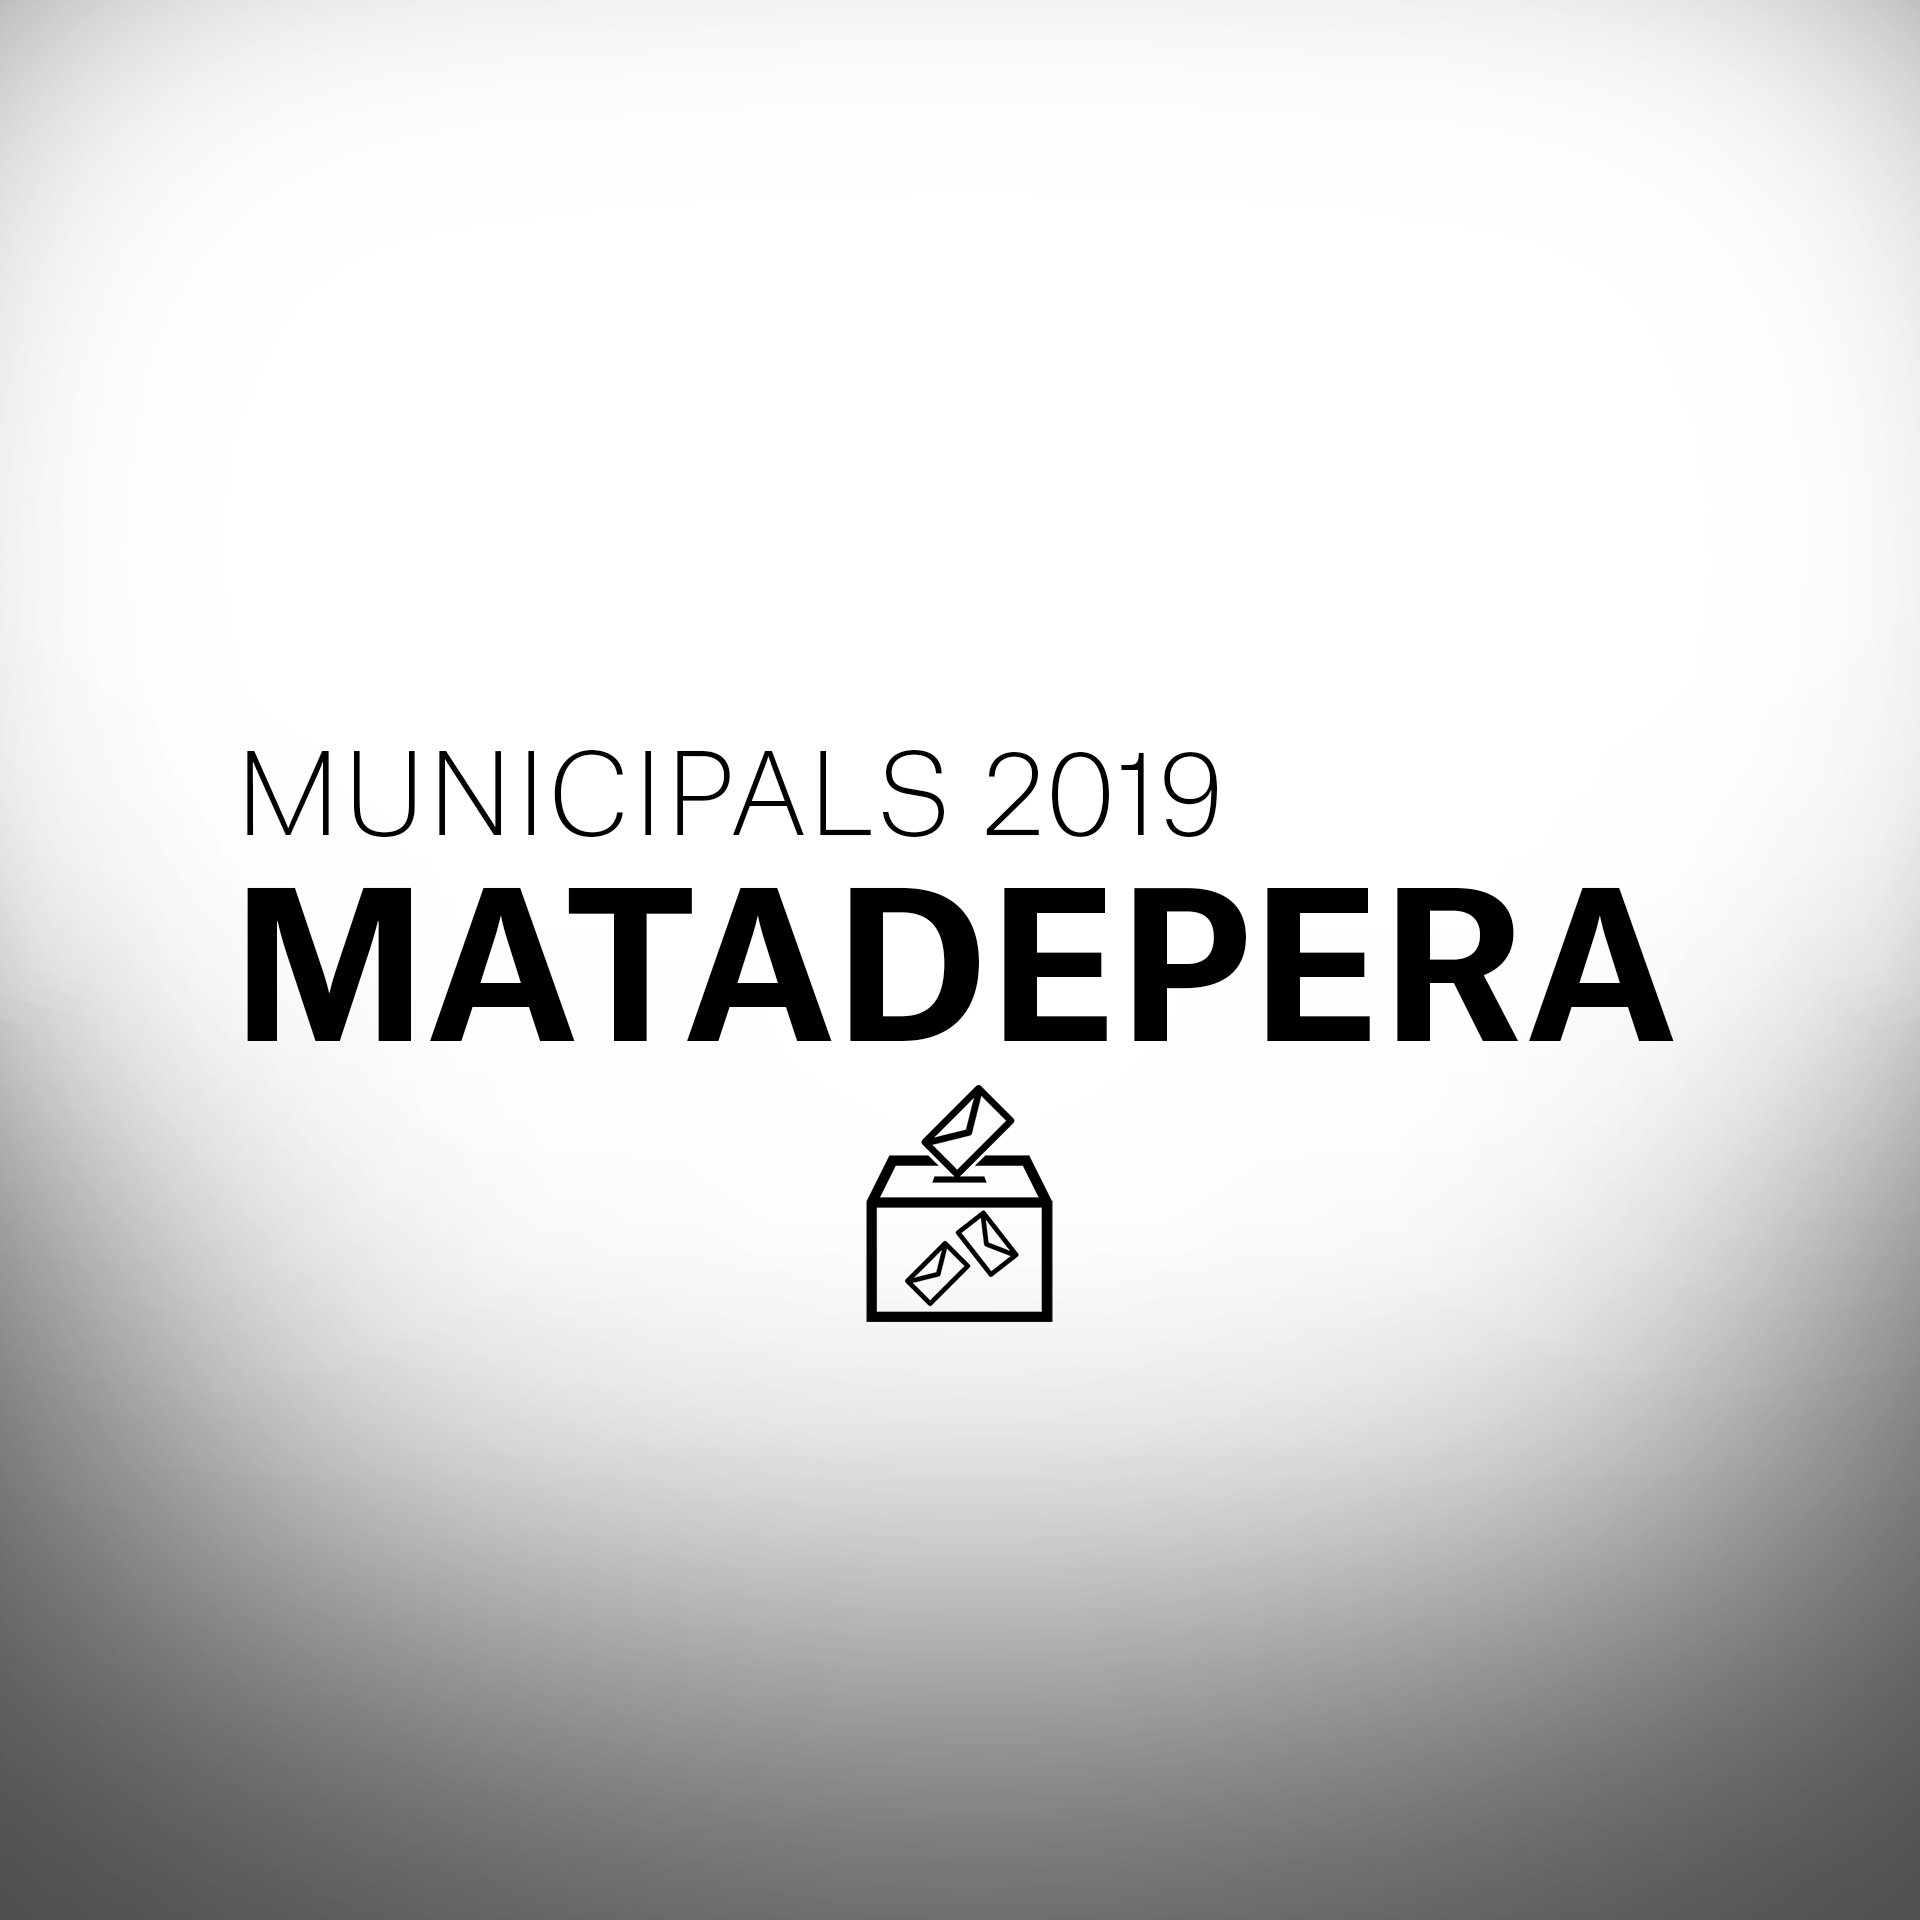 Què passarà a les eleccions municipals a Matadepera?